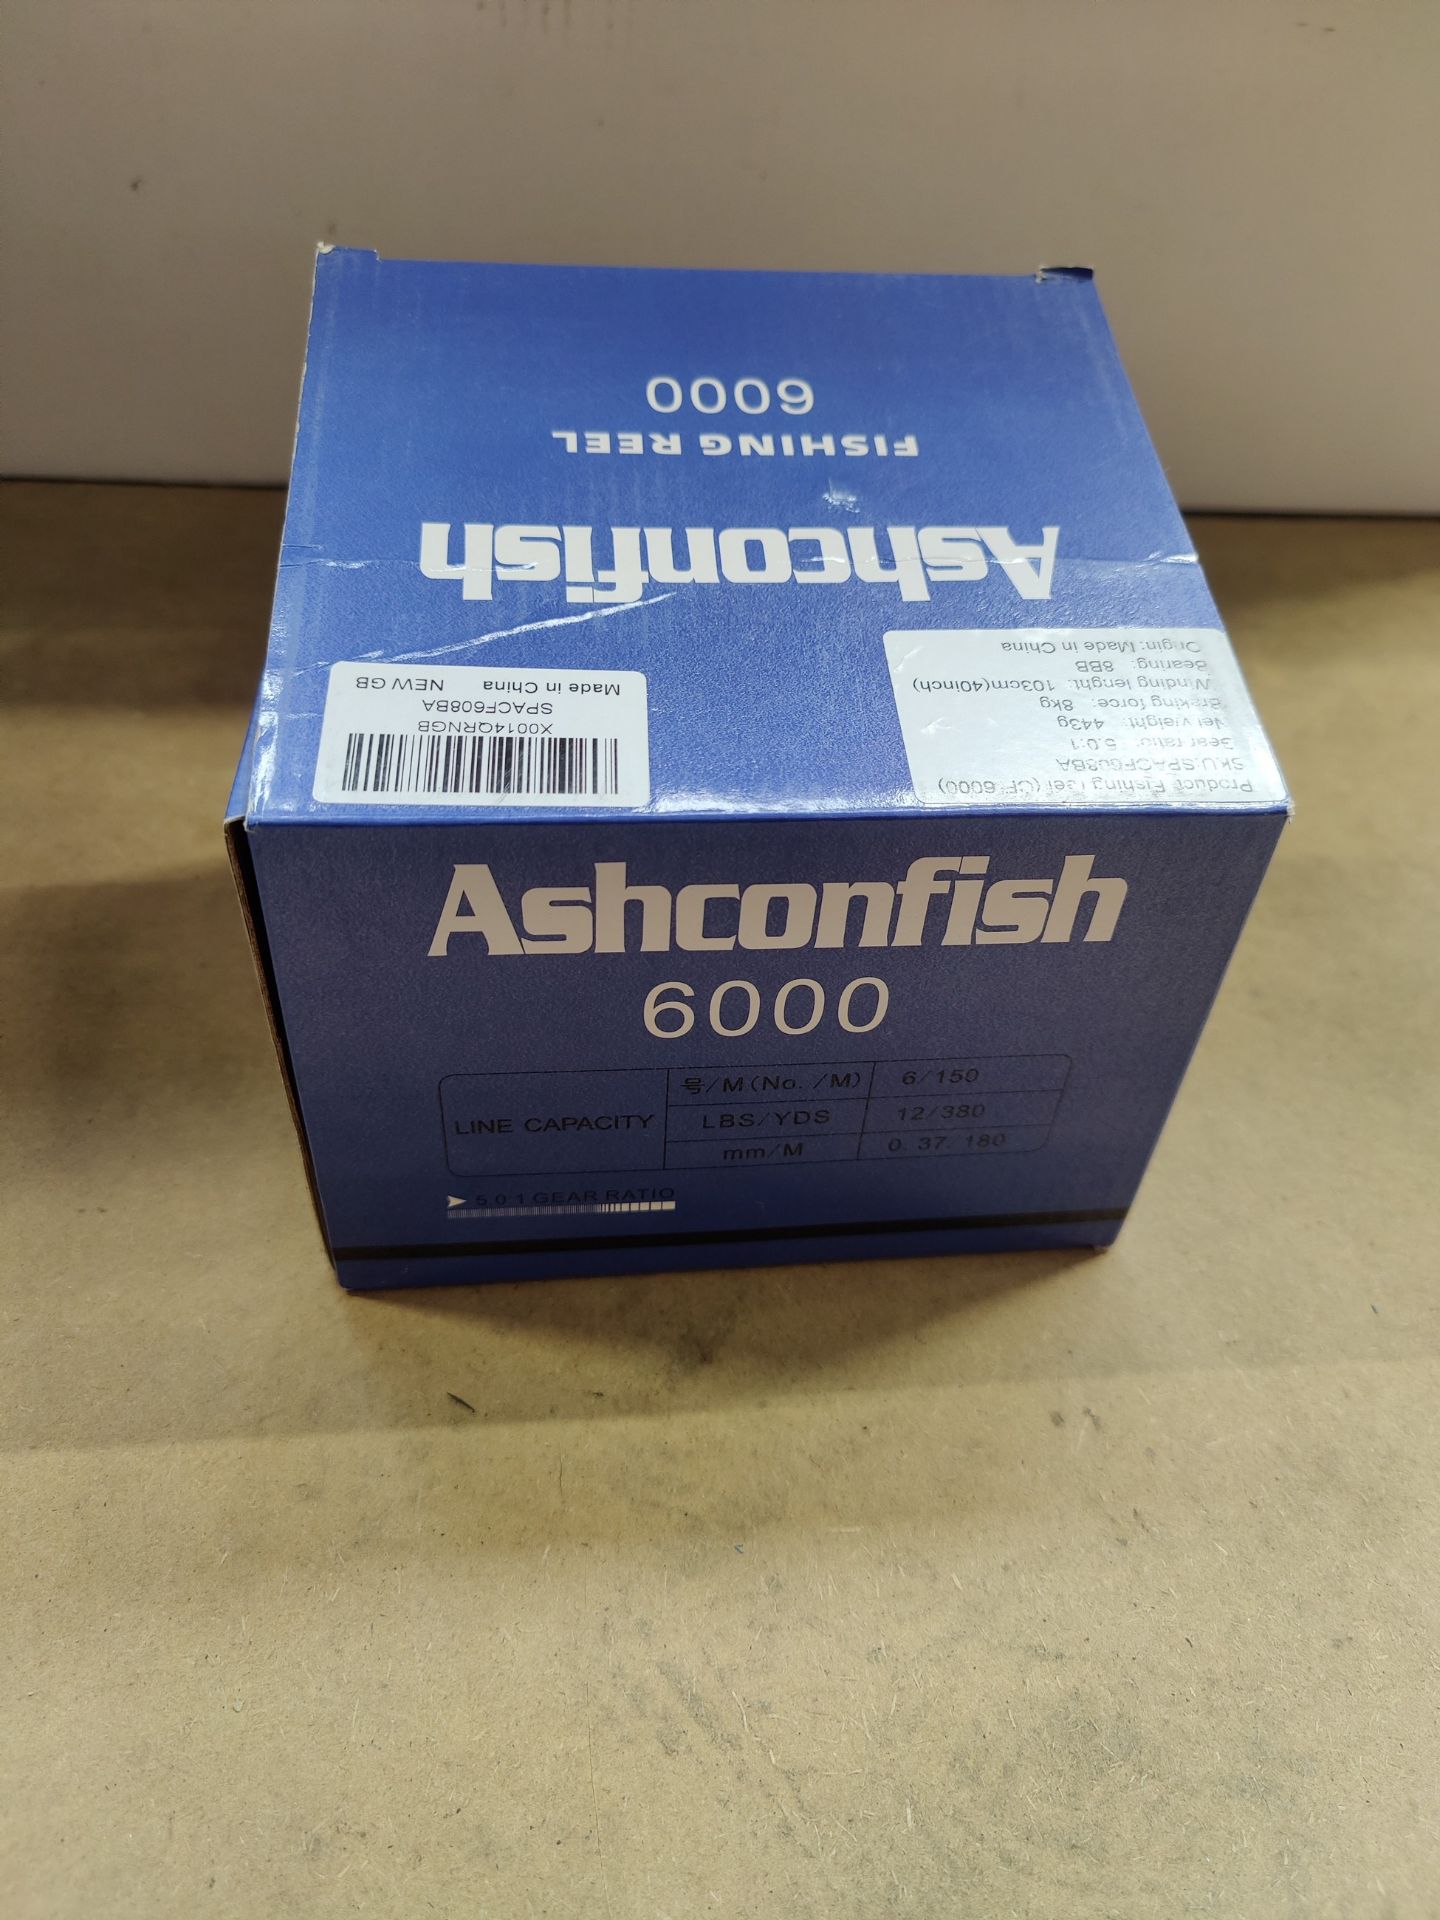 RRP £38.37 Ashconfish Fishing Reel - Image 2 of 2